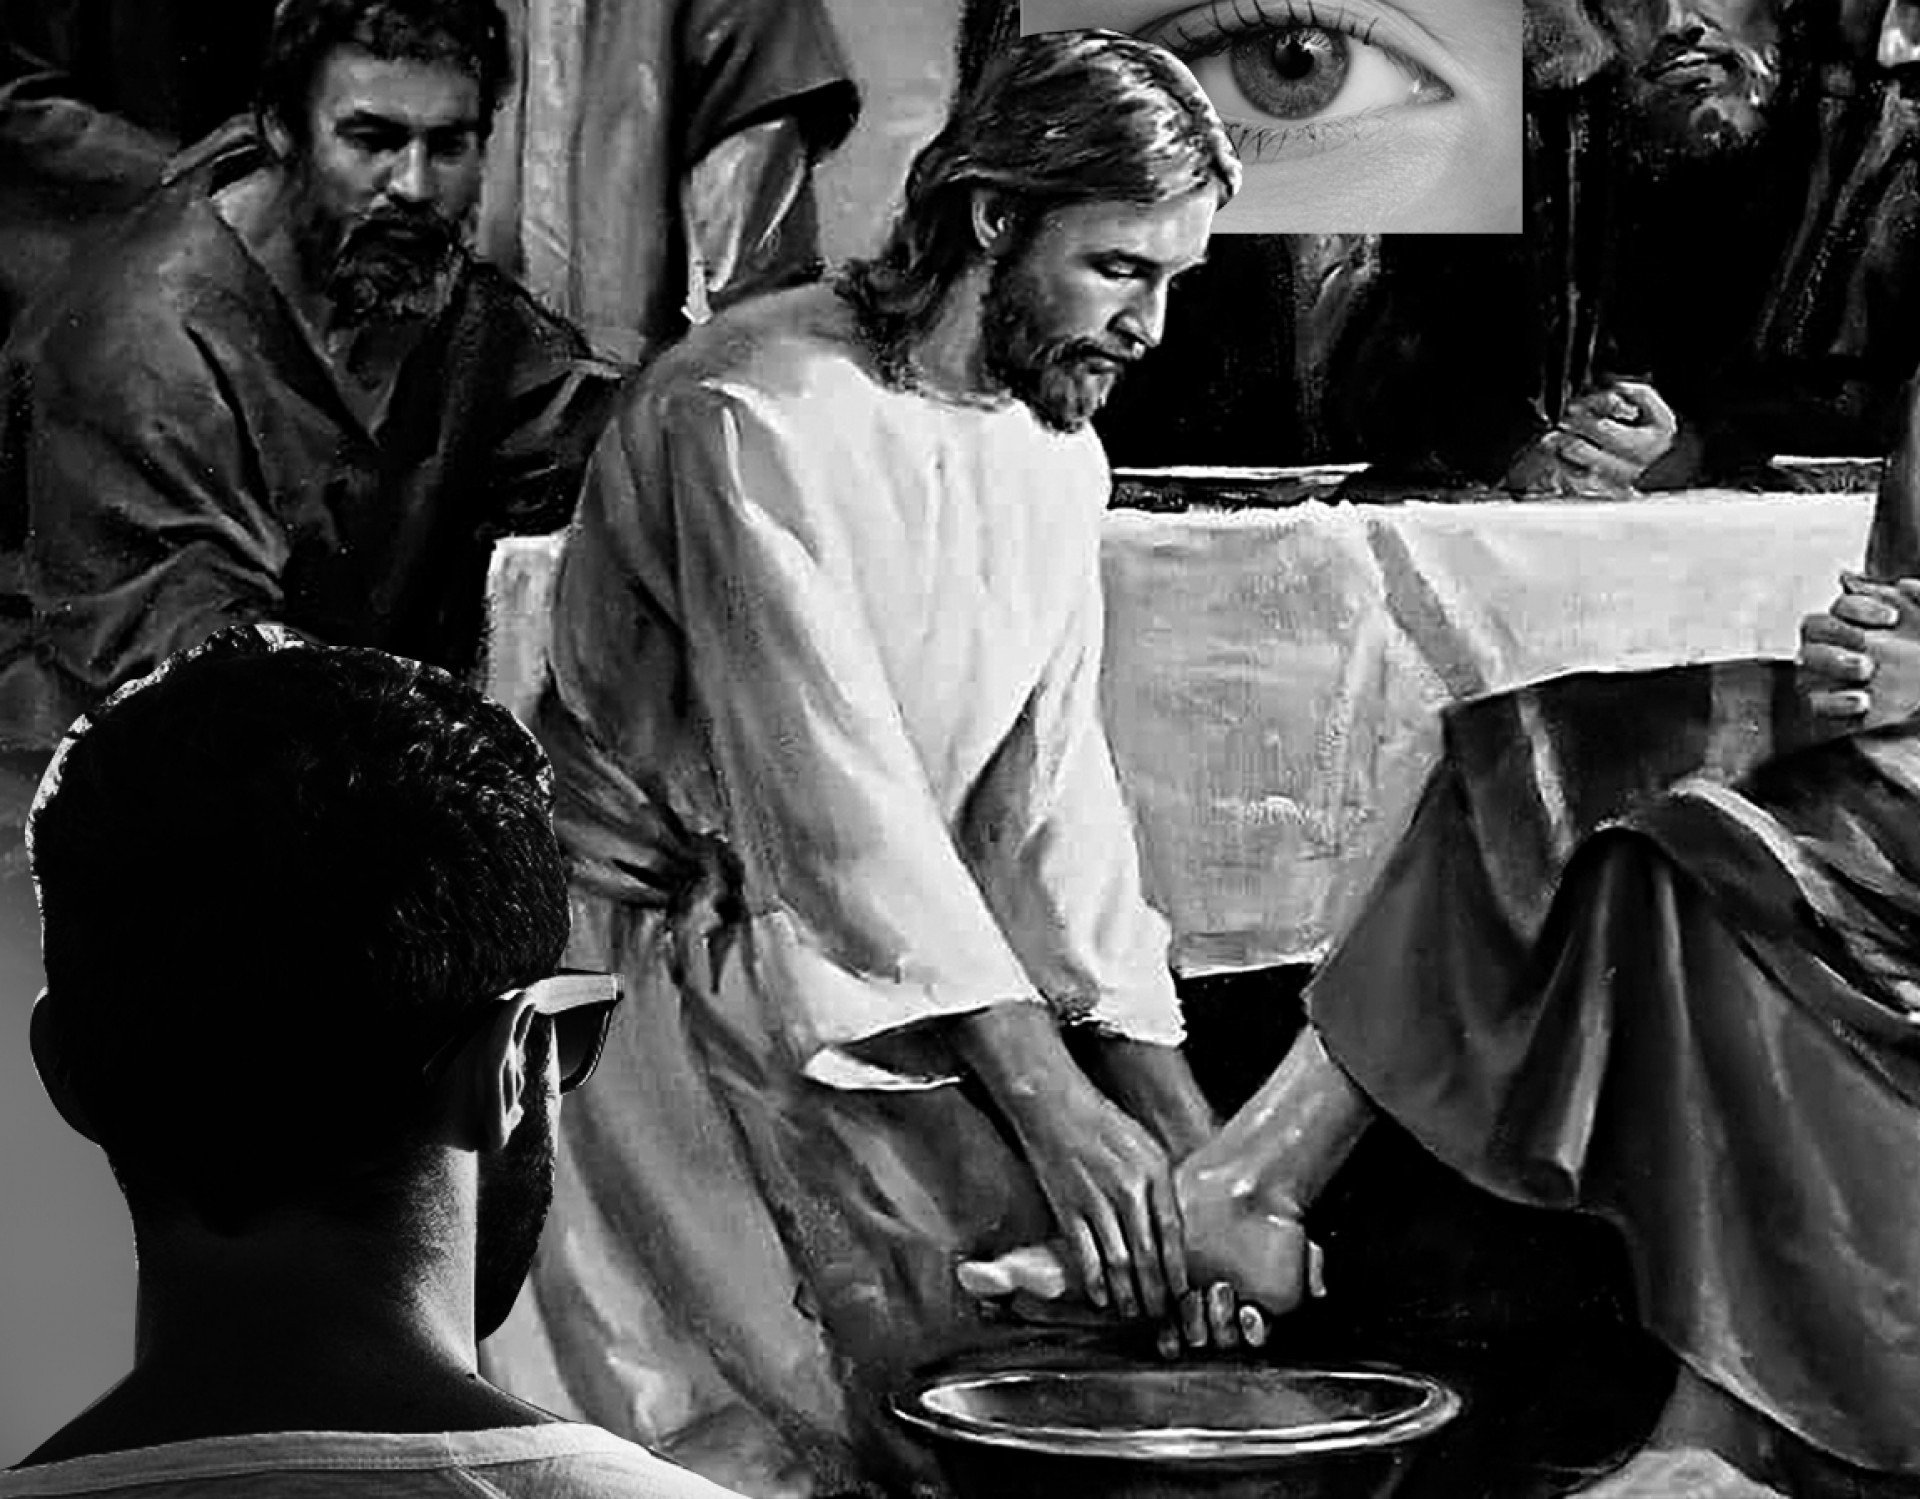 Liderança servidora: o exemplo eterno de Jesus